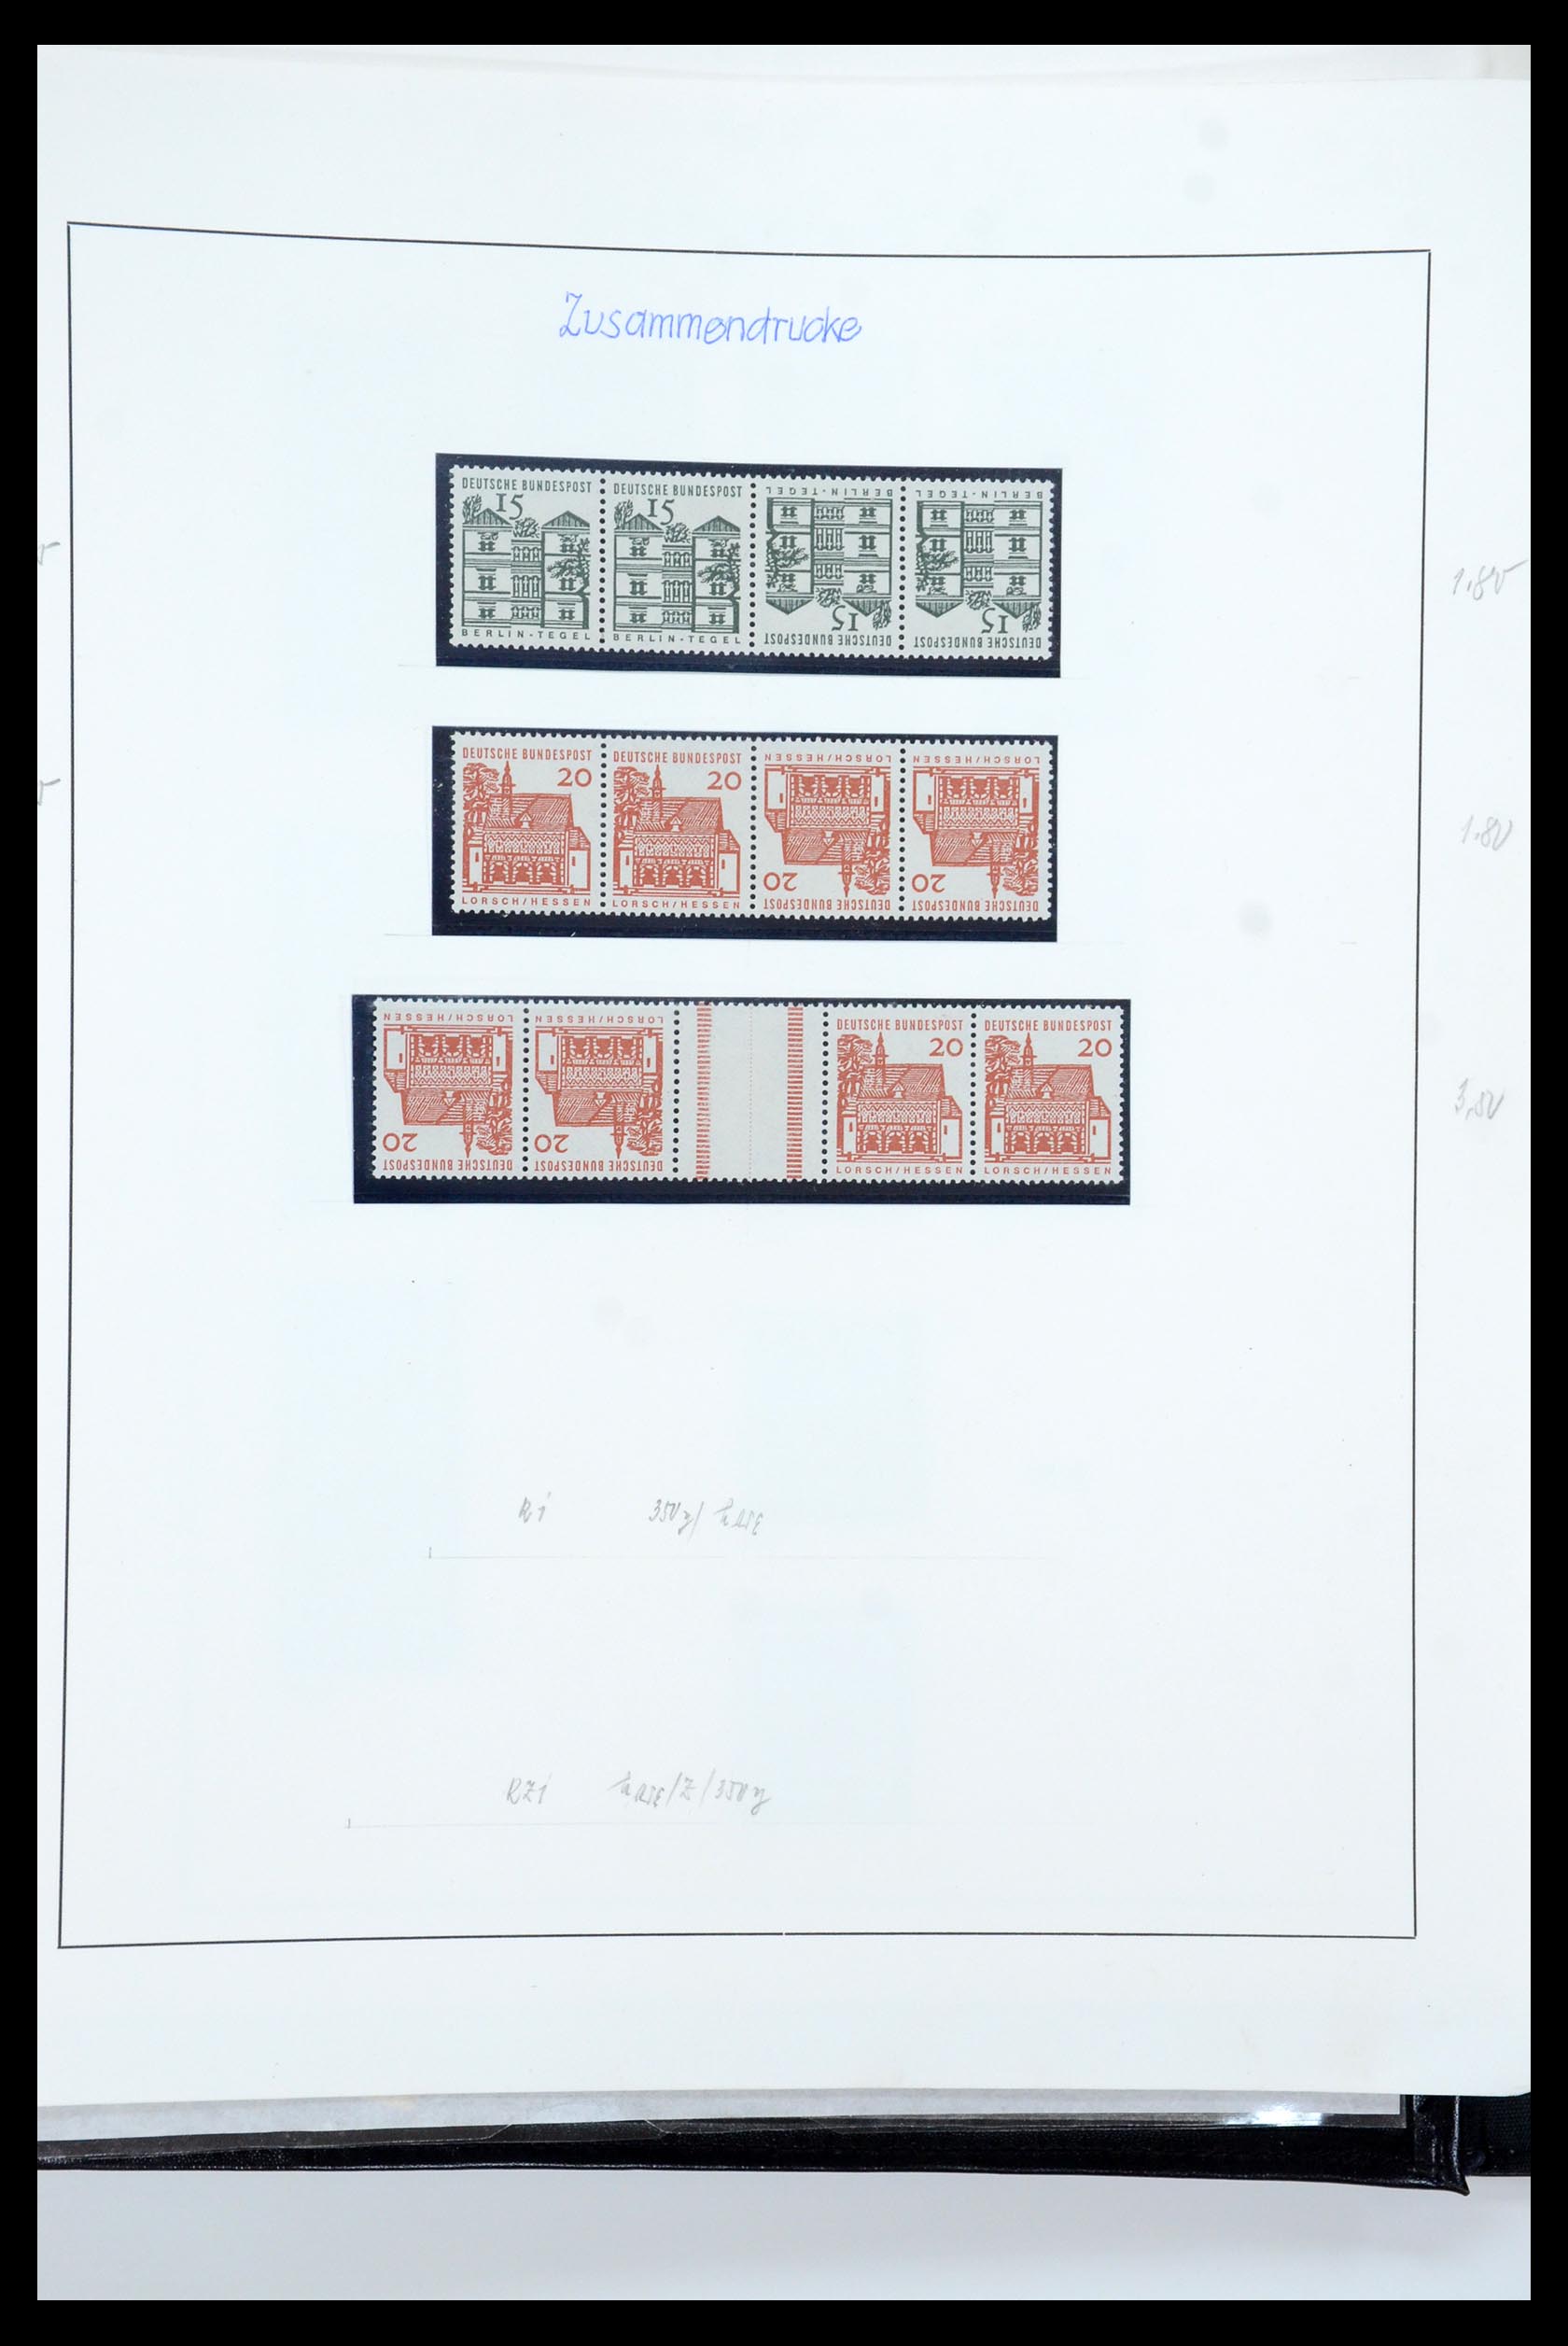 35729 057 - Postzegelverzameling 35729 Duitsland combinaties 1920-1980.